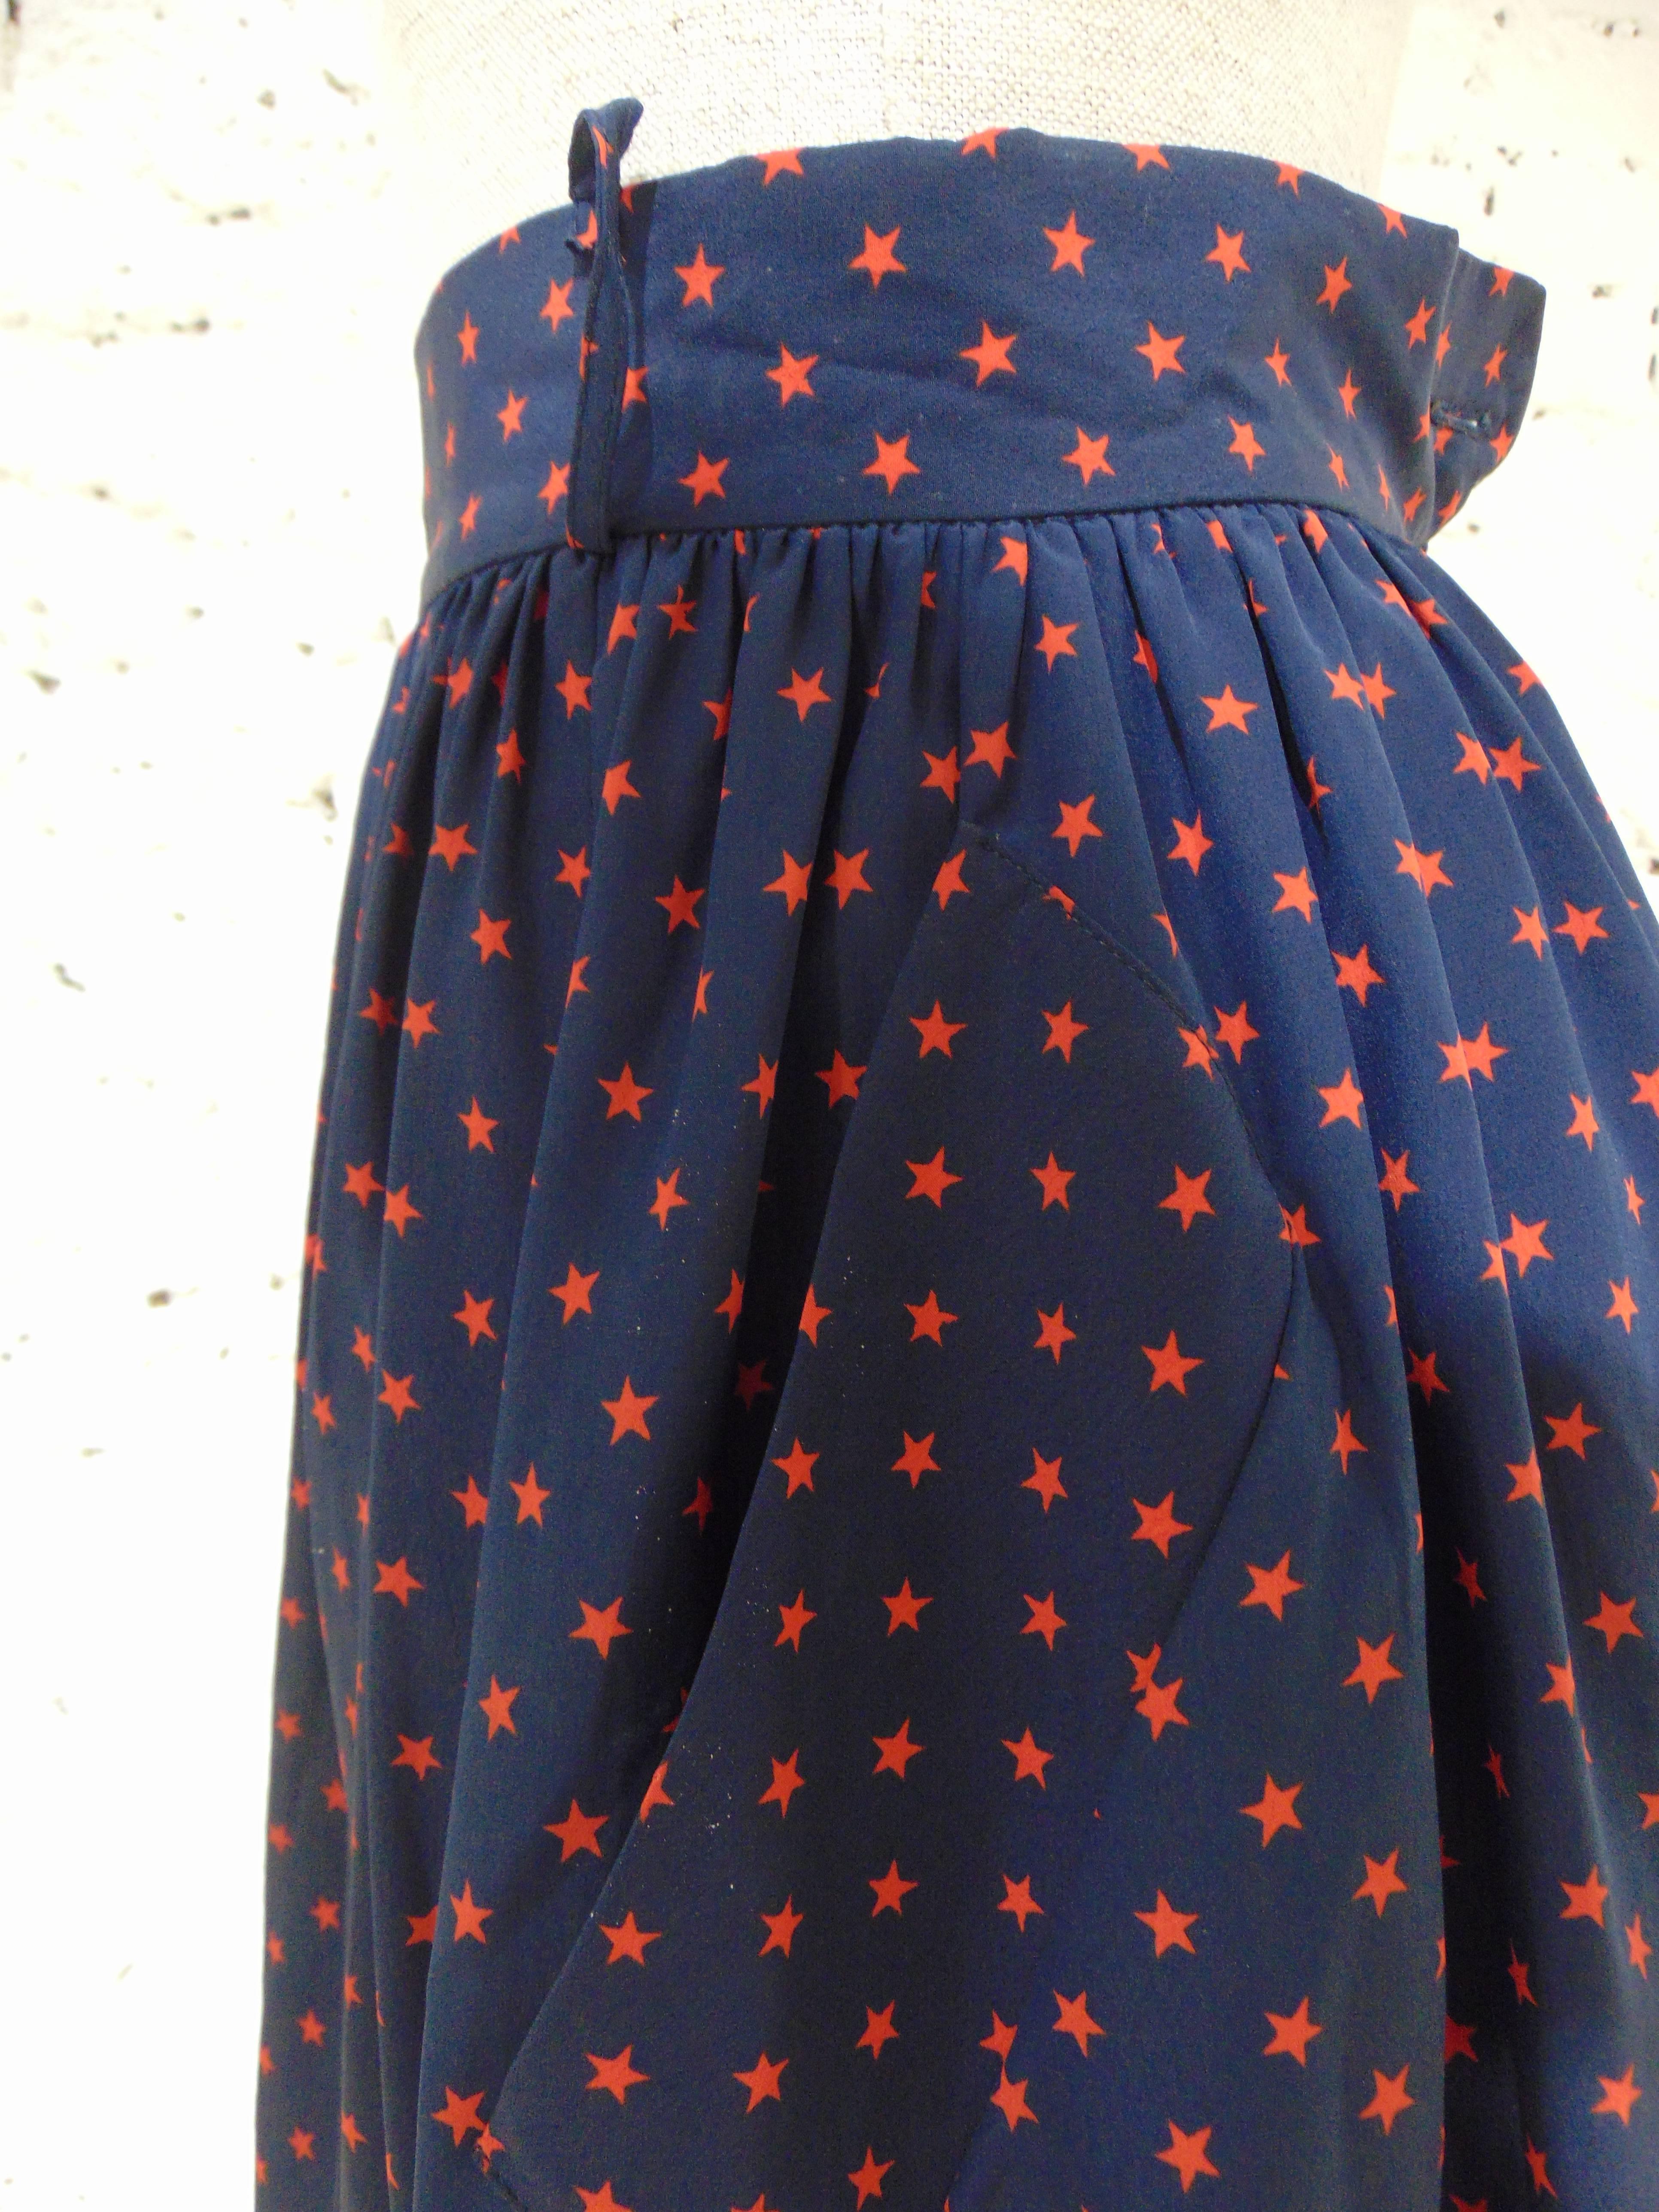 Moschino Cheap & Chic blu red stars silk skirt 2